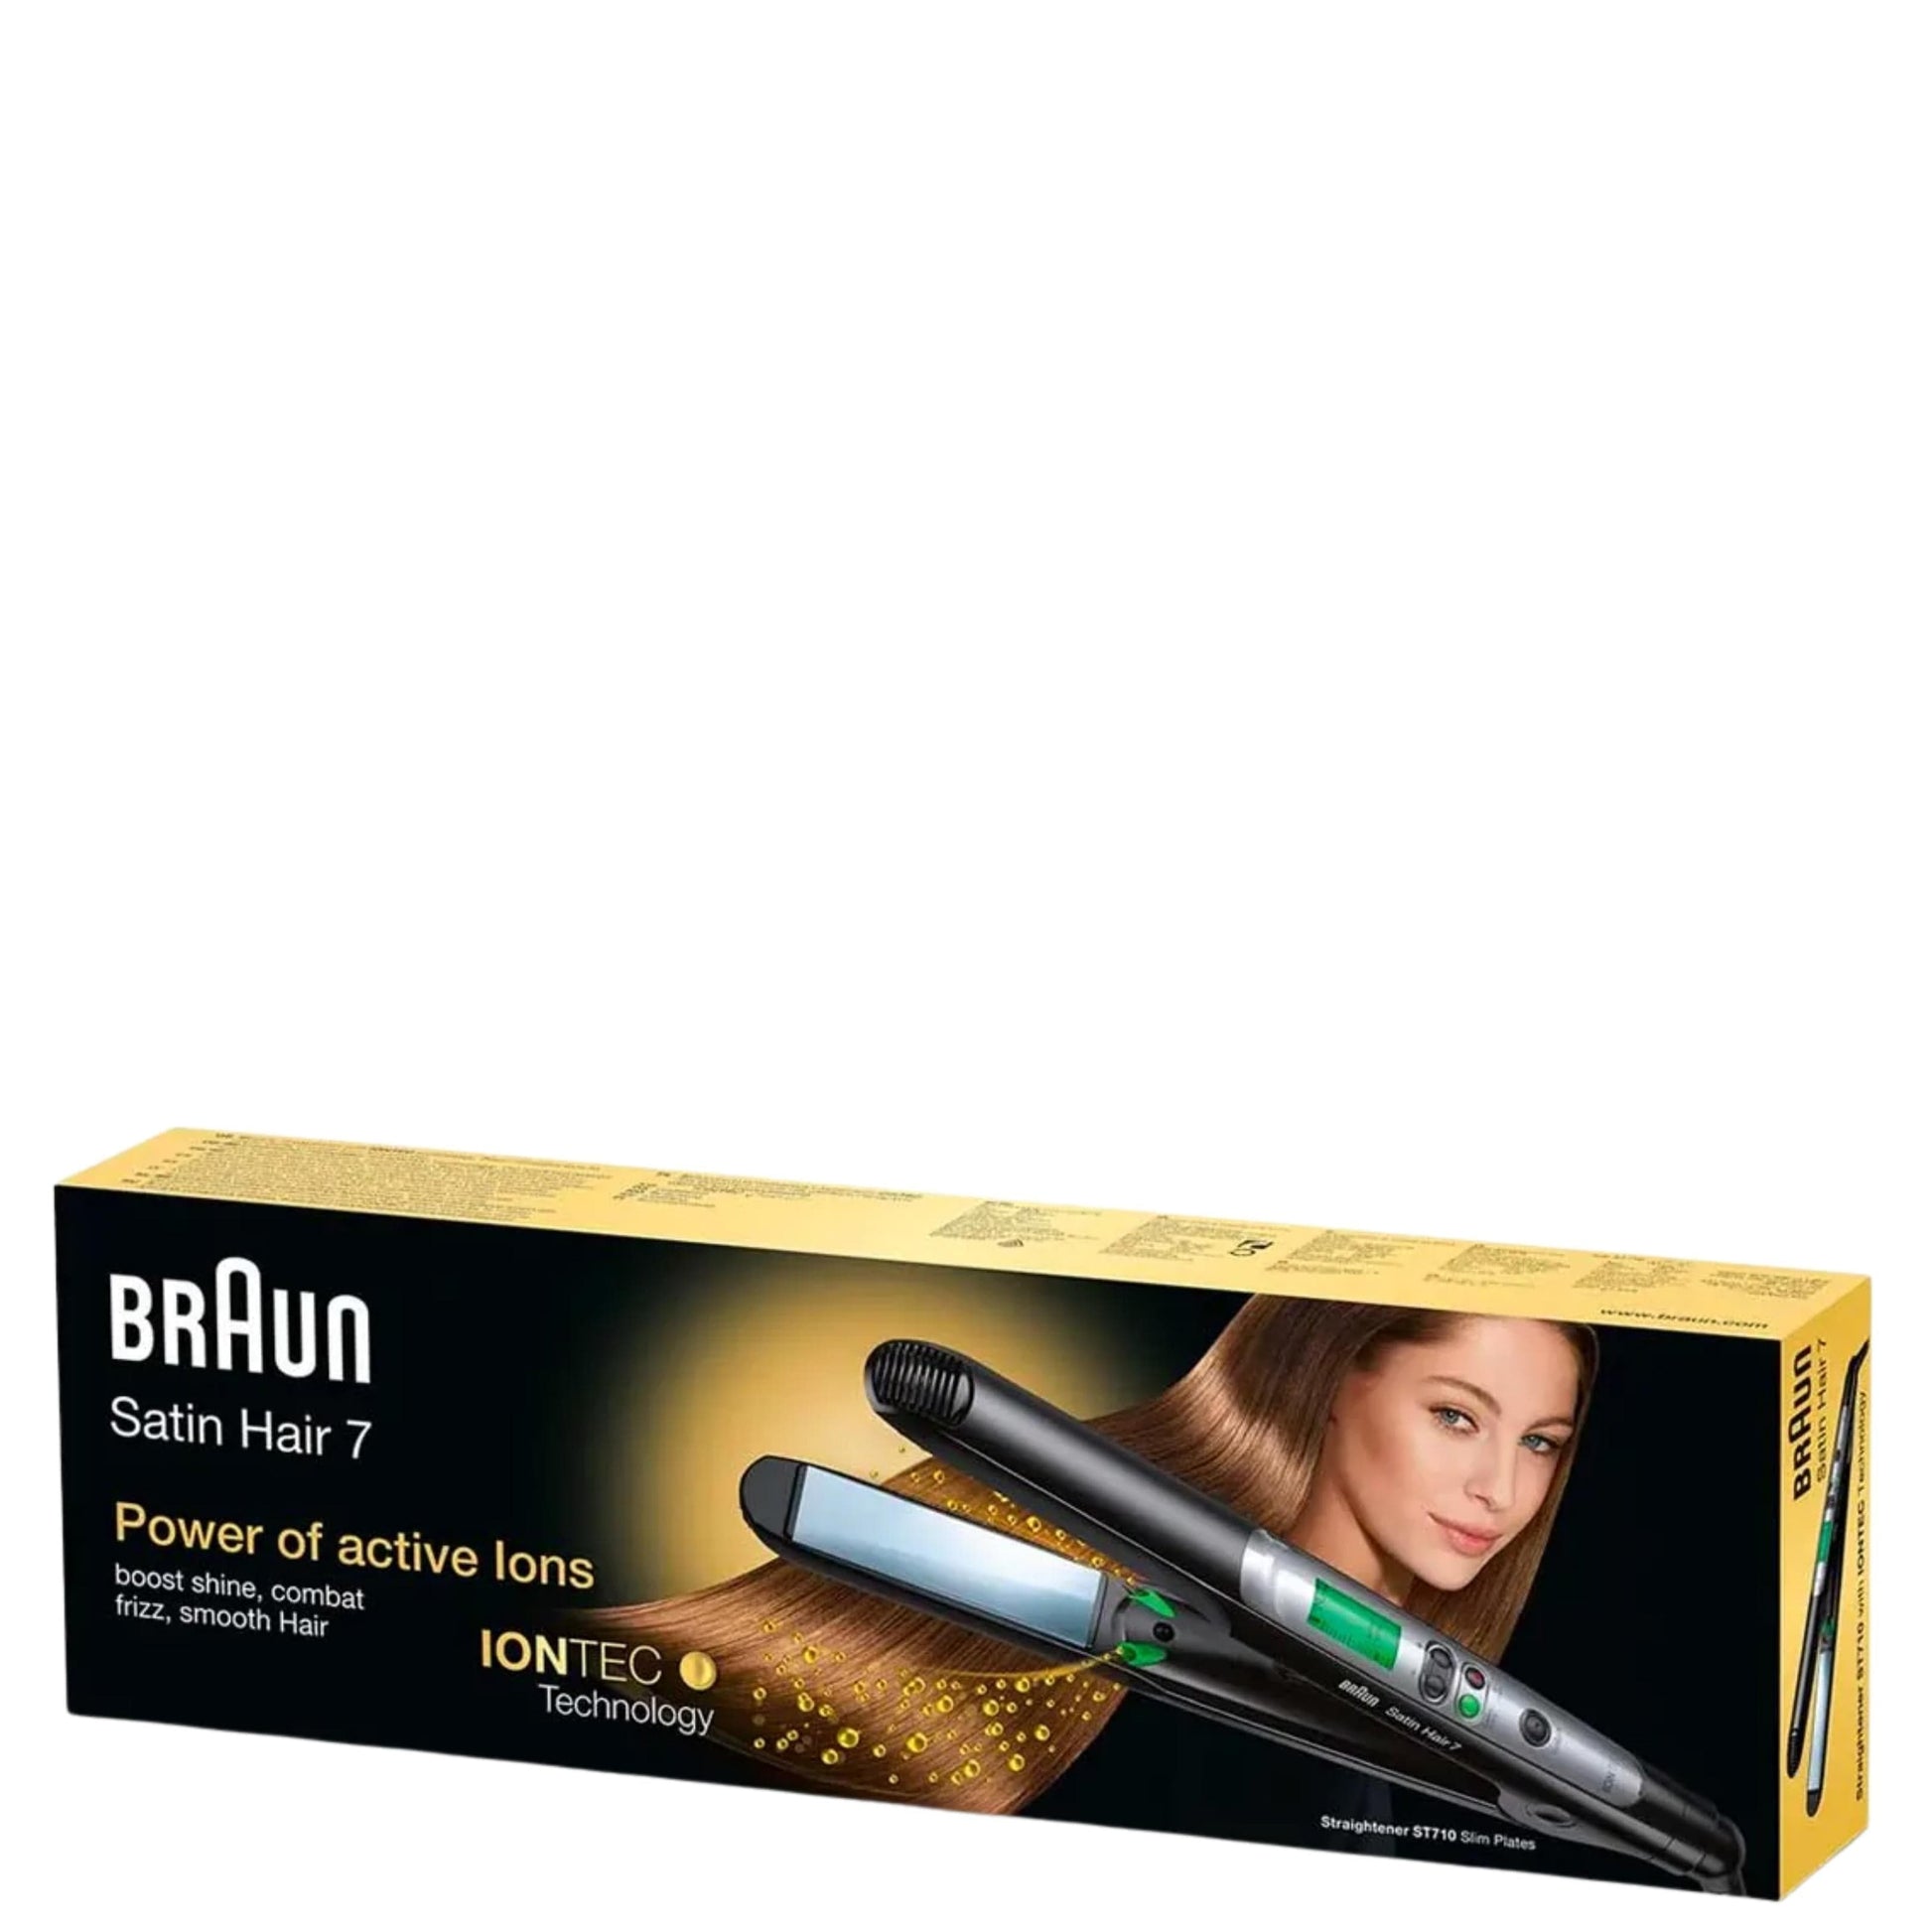 Braun Satin Hair 7 ST710 Straightener